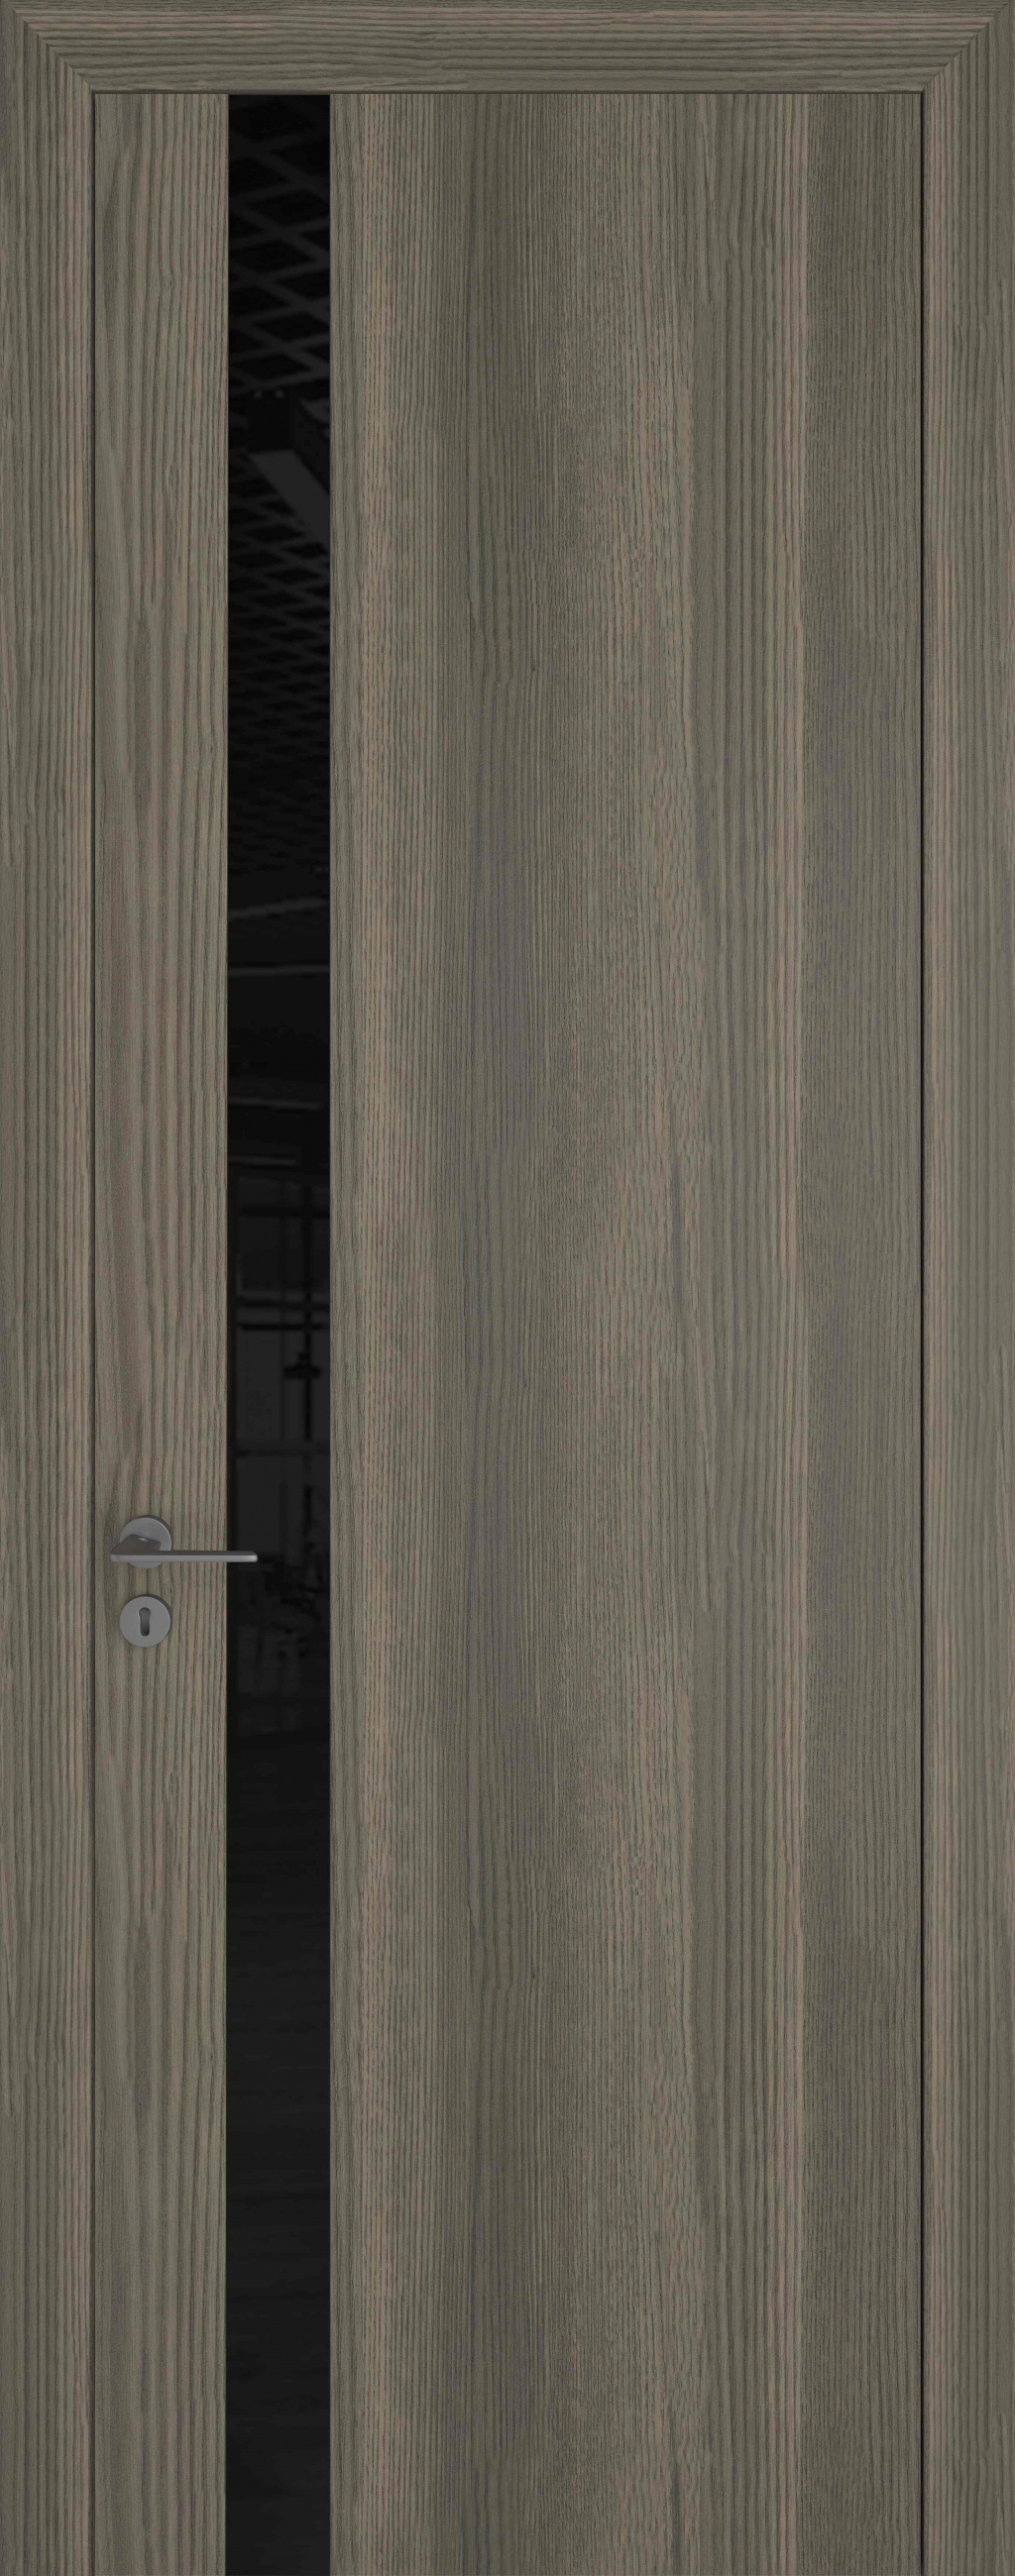 Zadoor Межкомнатная дверь Квалитет К2 ПО, арт. 16520 - фото №1